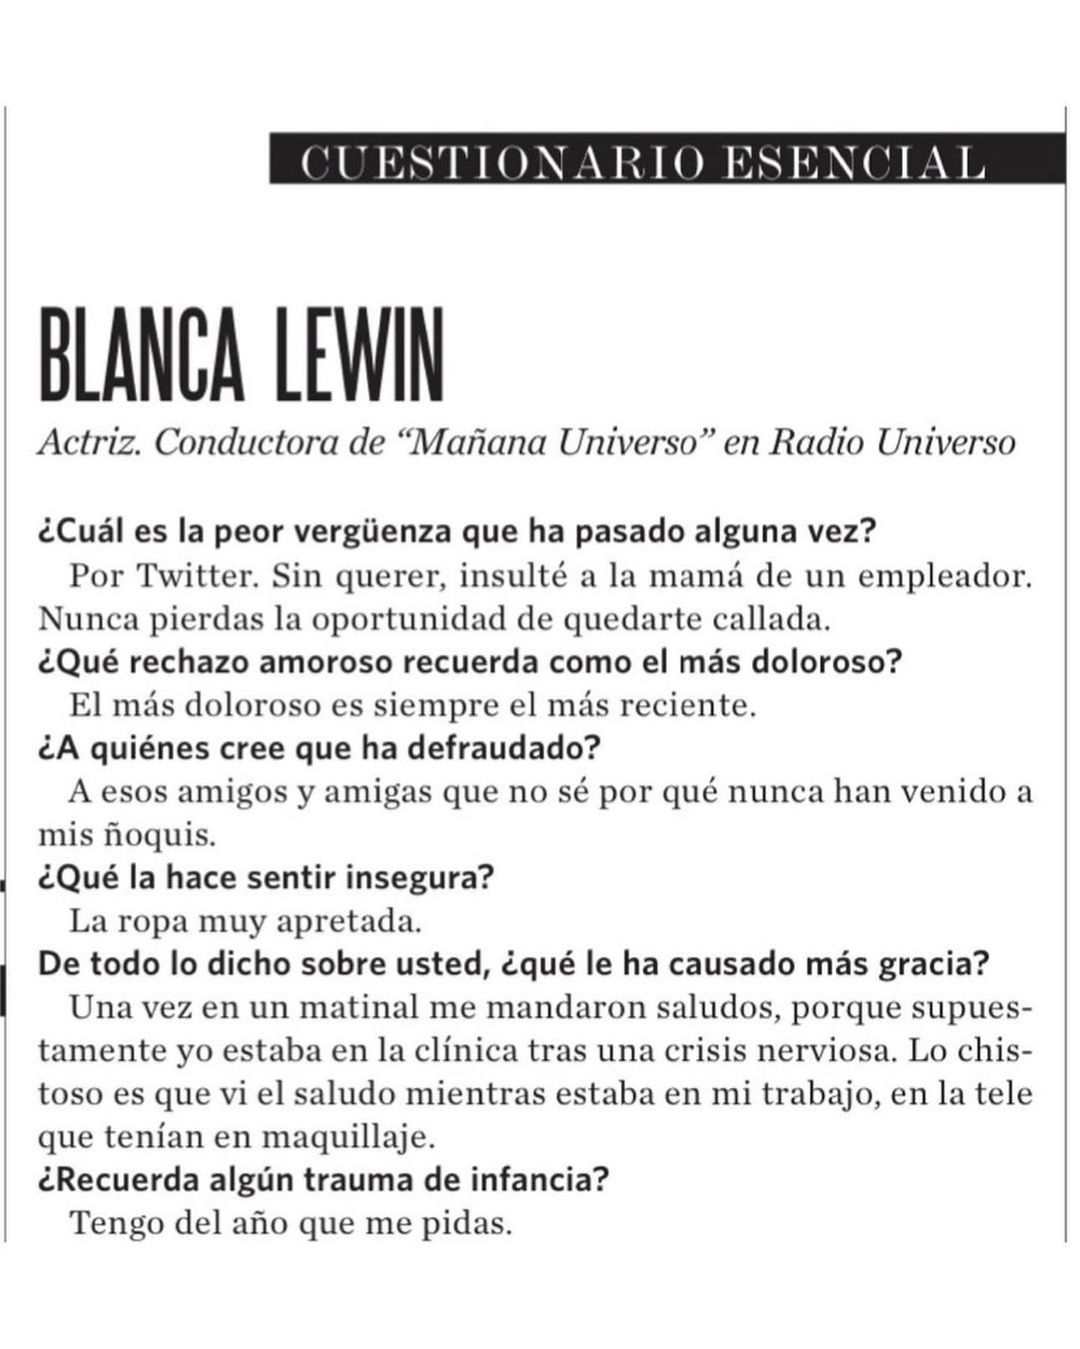 Blanca Lewin Cuestionario